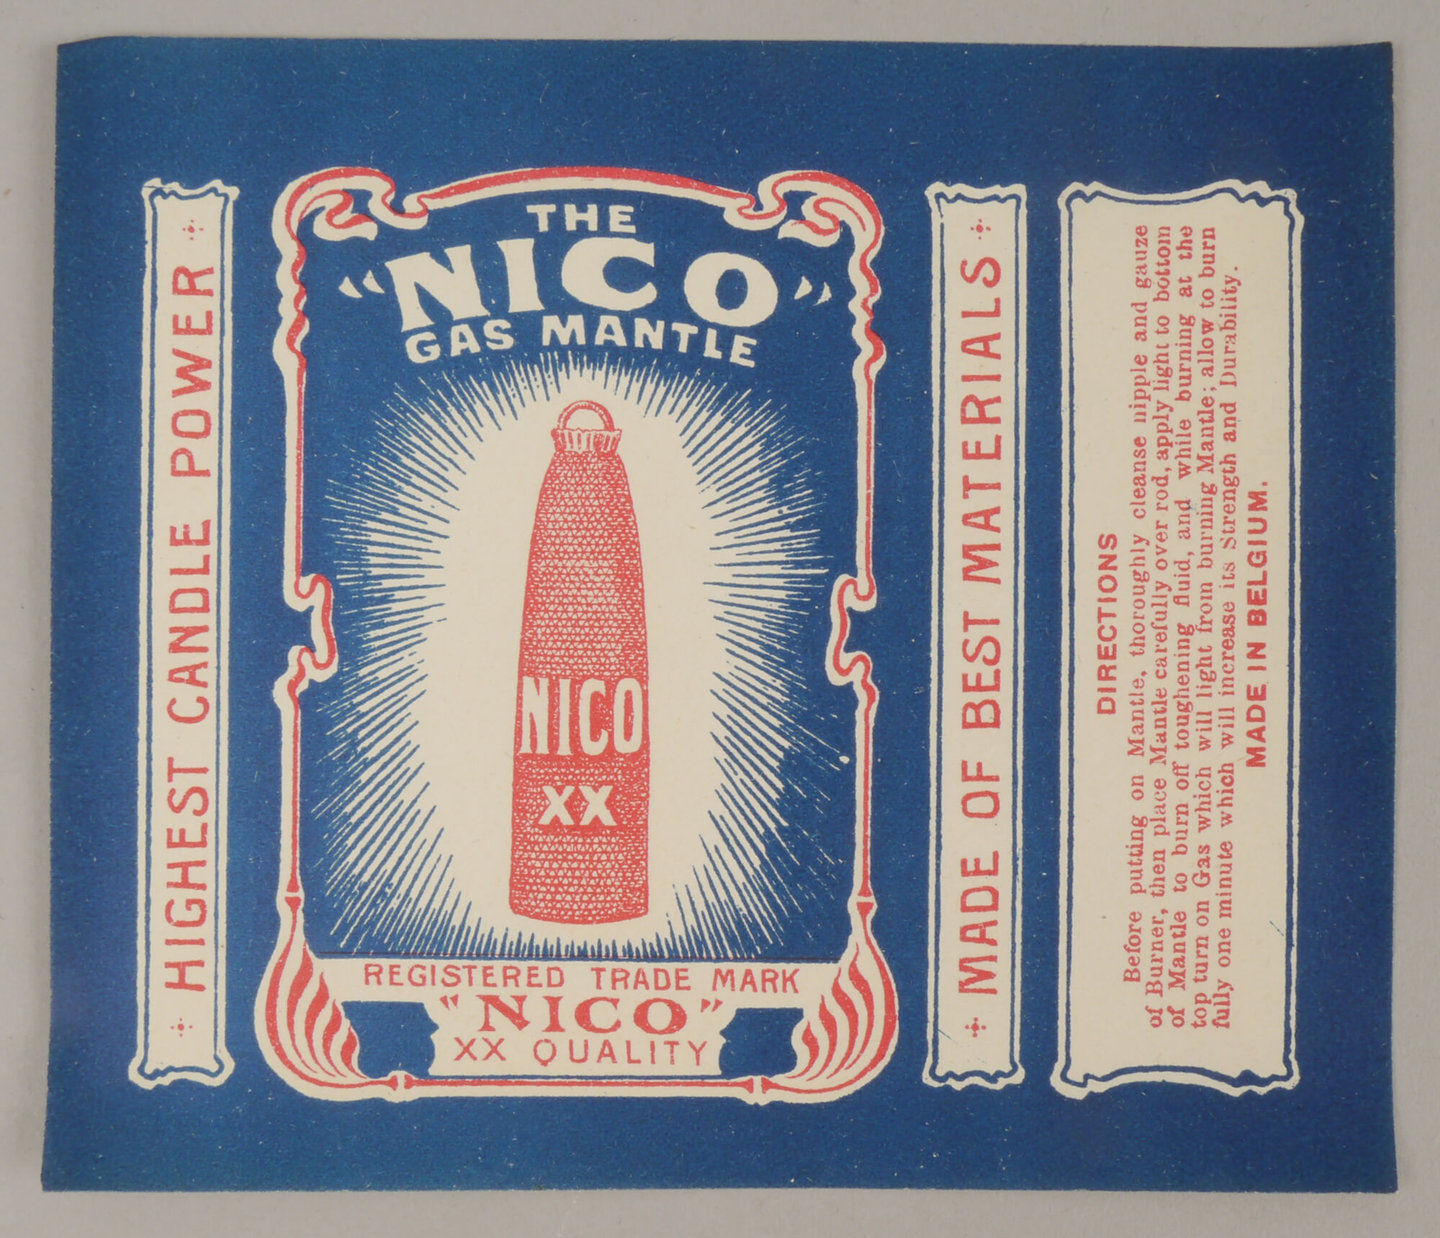 Verpakkingsetiket voor gloeikousje van het merk Nico